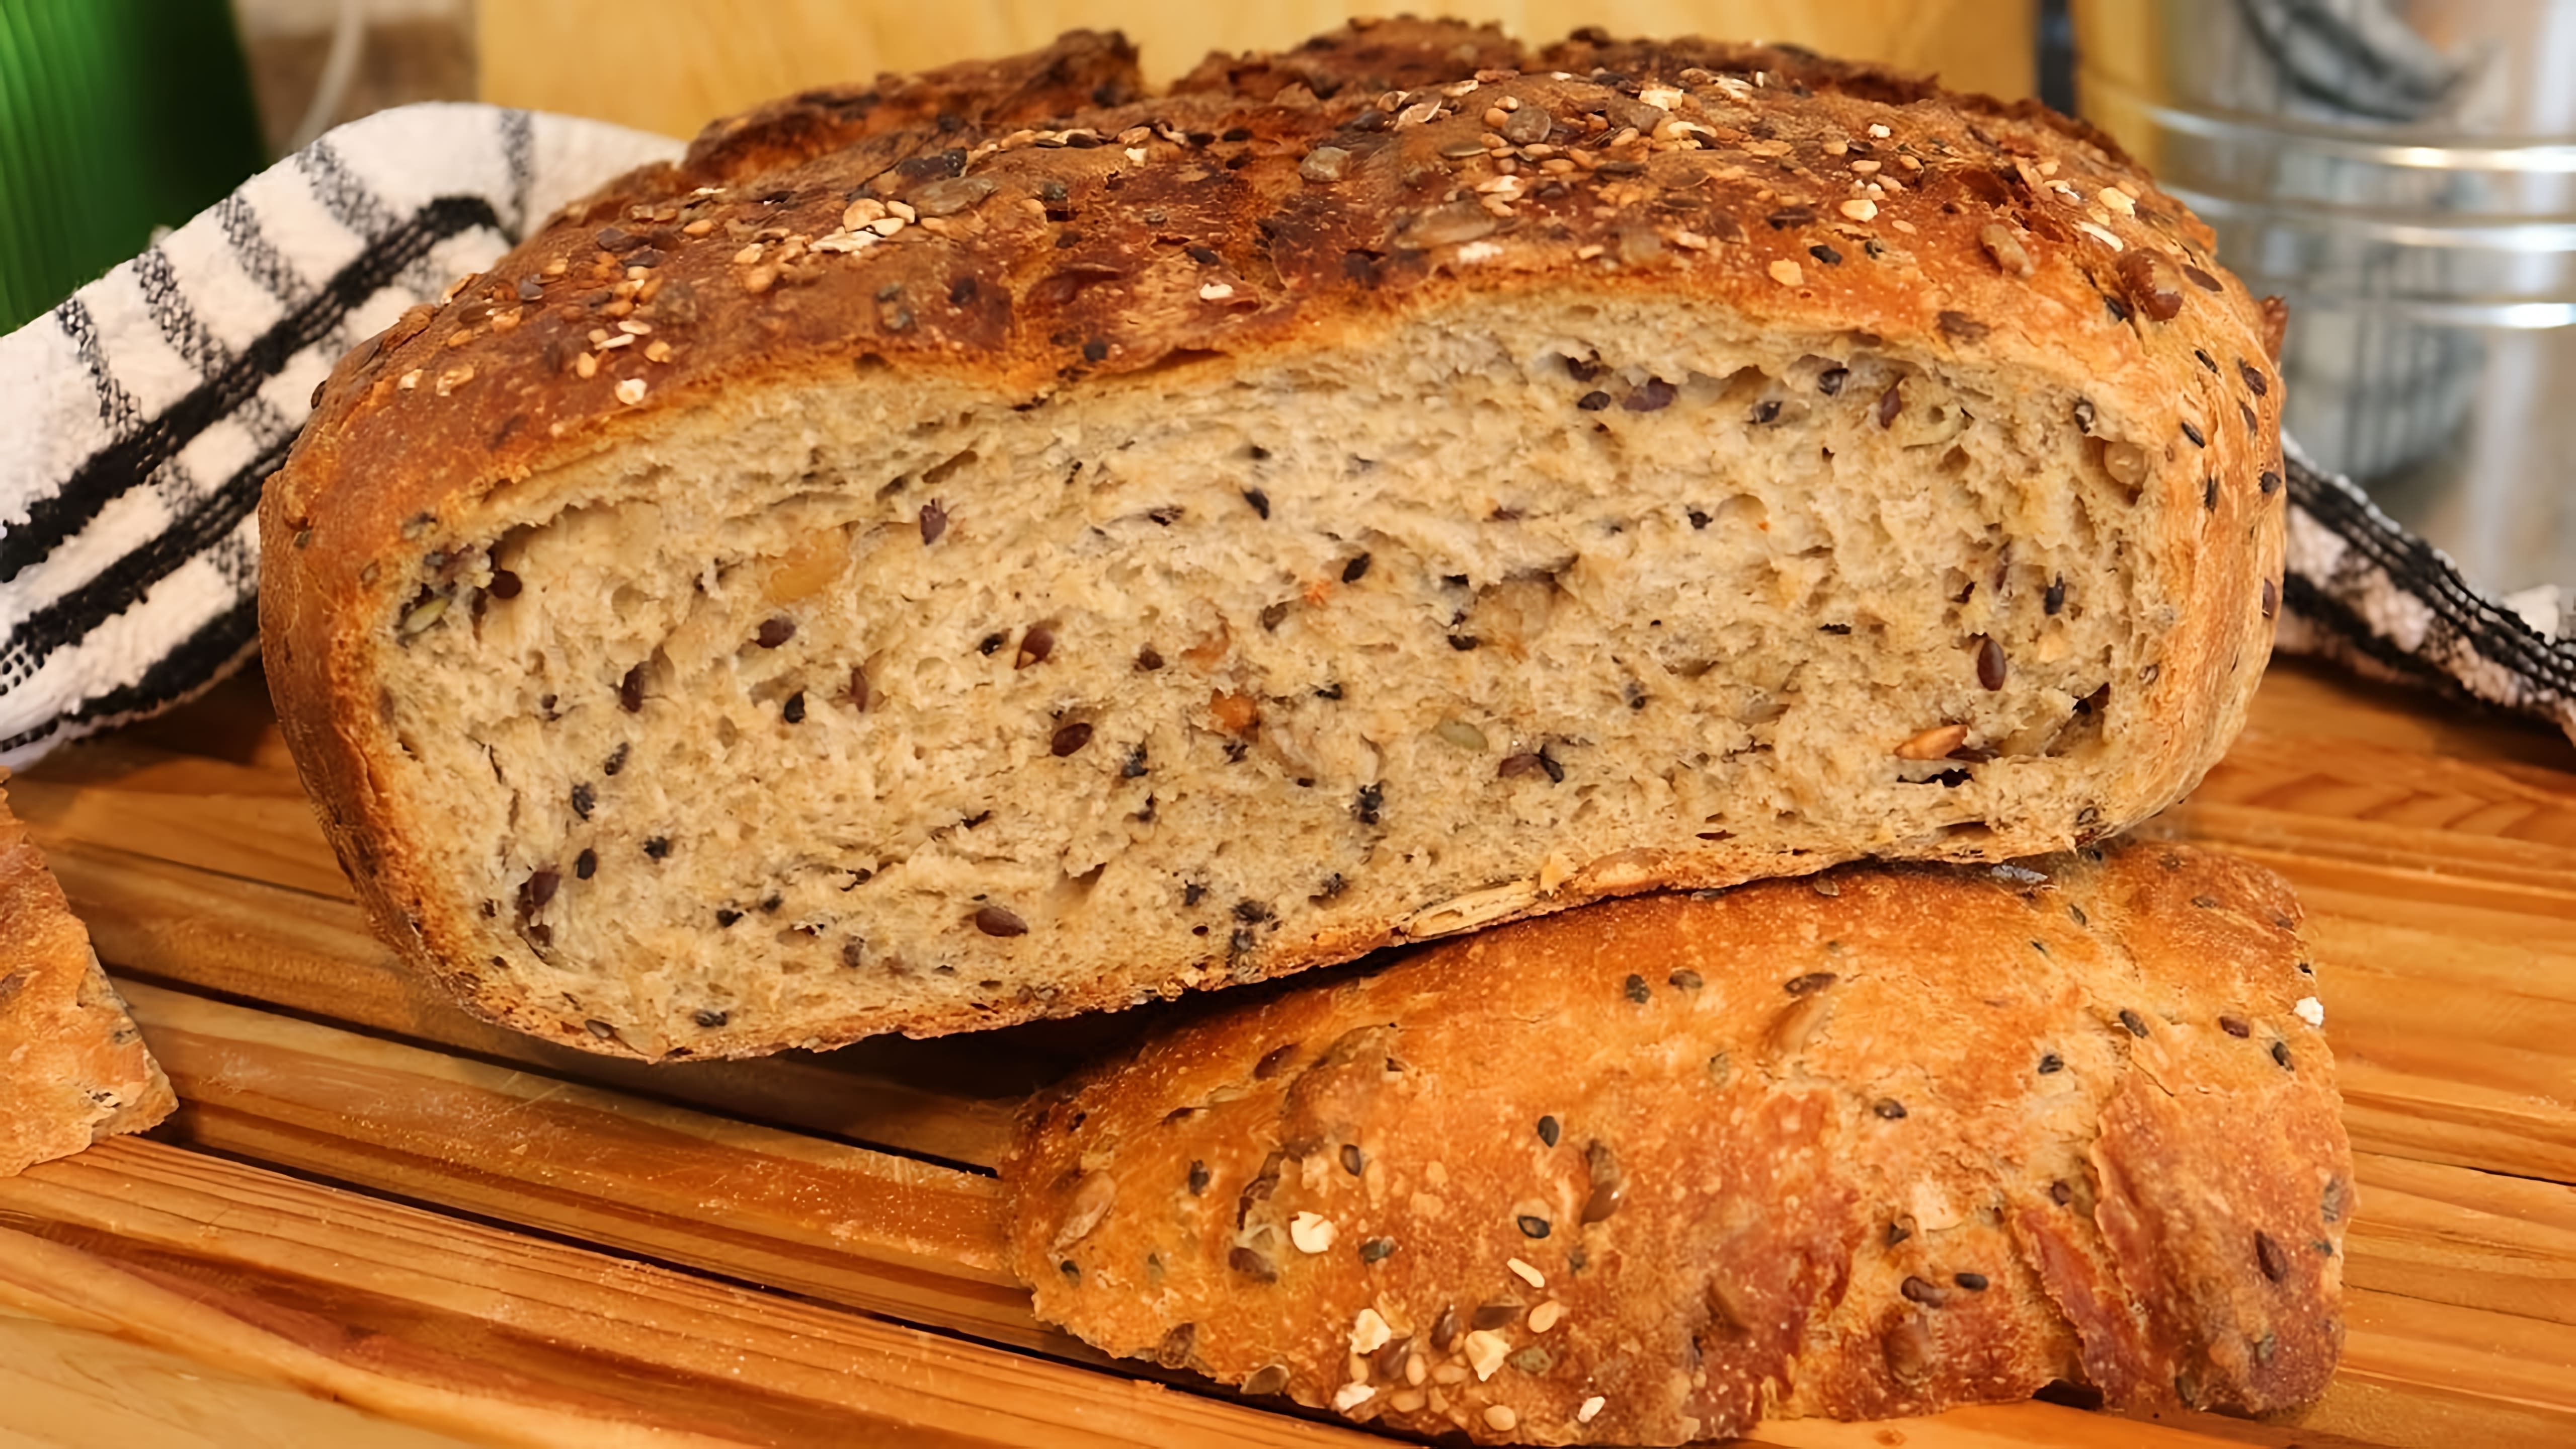 В этом видео демонстрируется процесс приготовления пшенично-ржаного хлеба с семенами